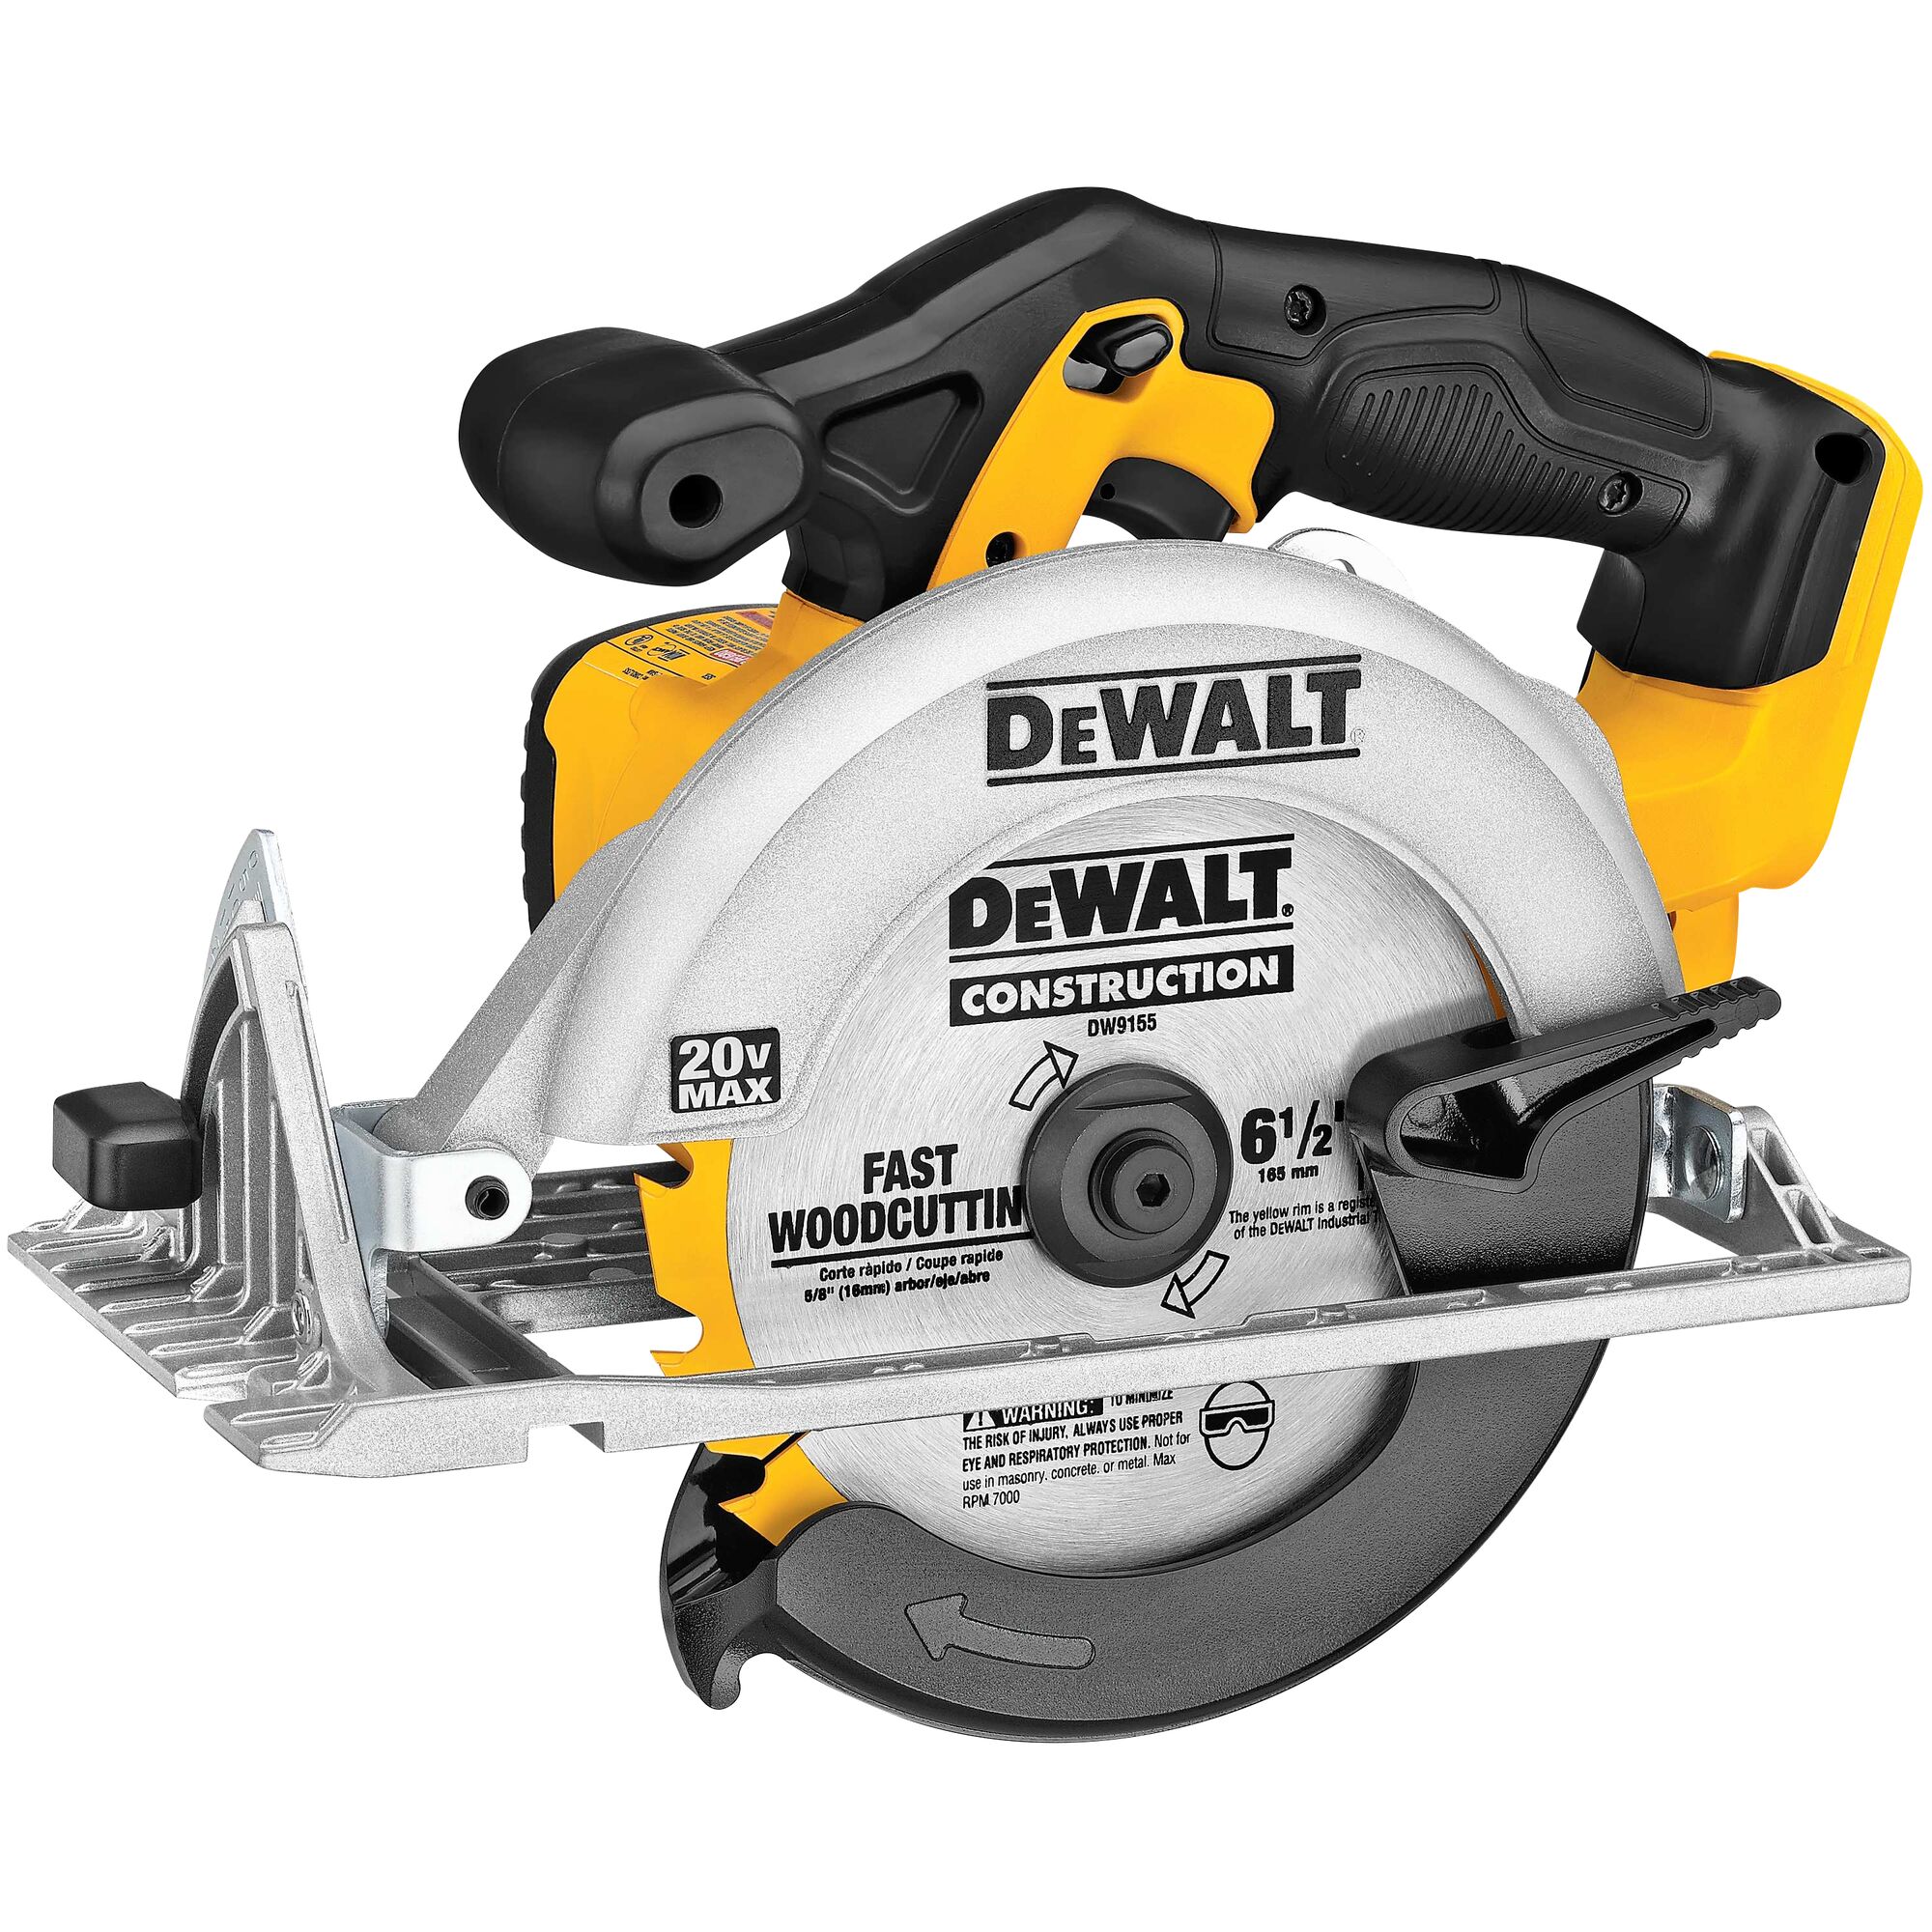 DEWALT Circular Saw, 7-1/4 inch, Pivoting with up to 57 Degree Bevel,  Corded (DWE575SB) - Power Circular Saws 